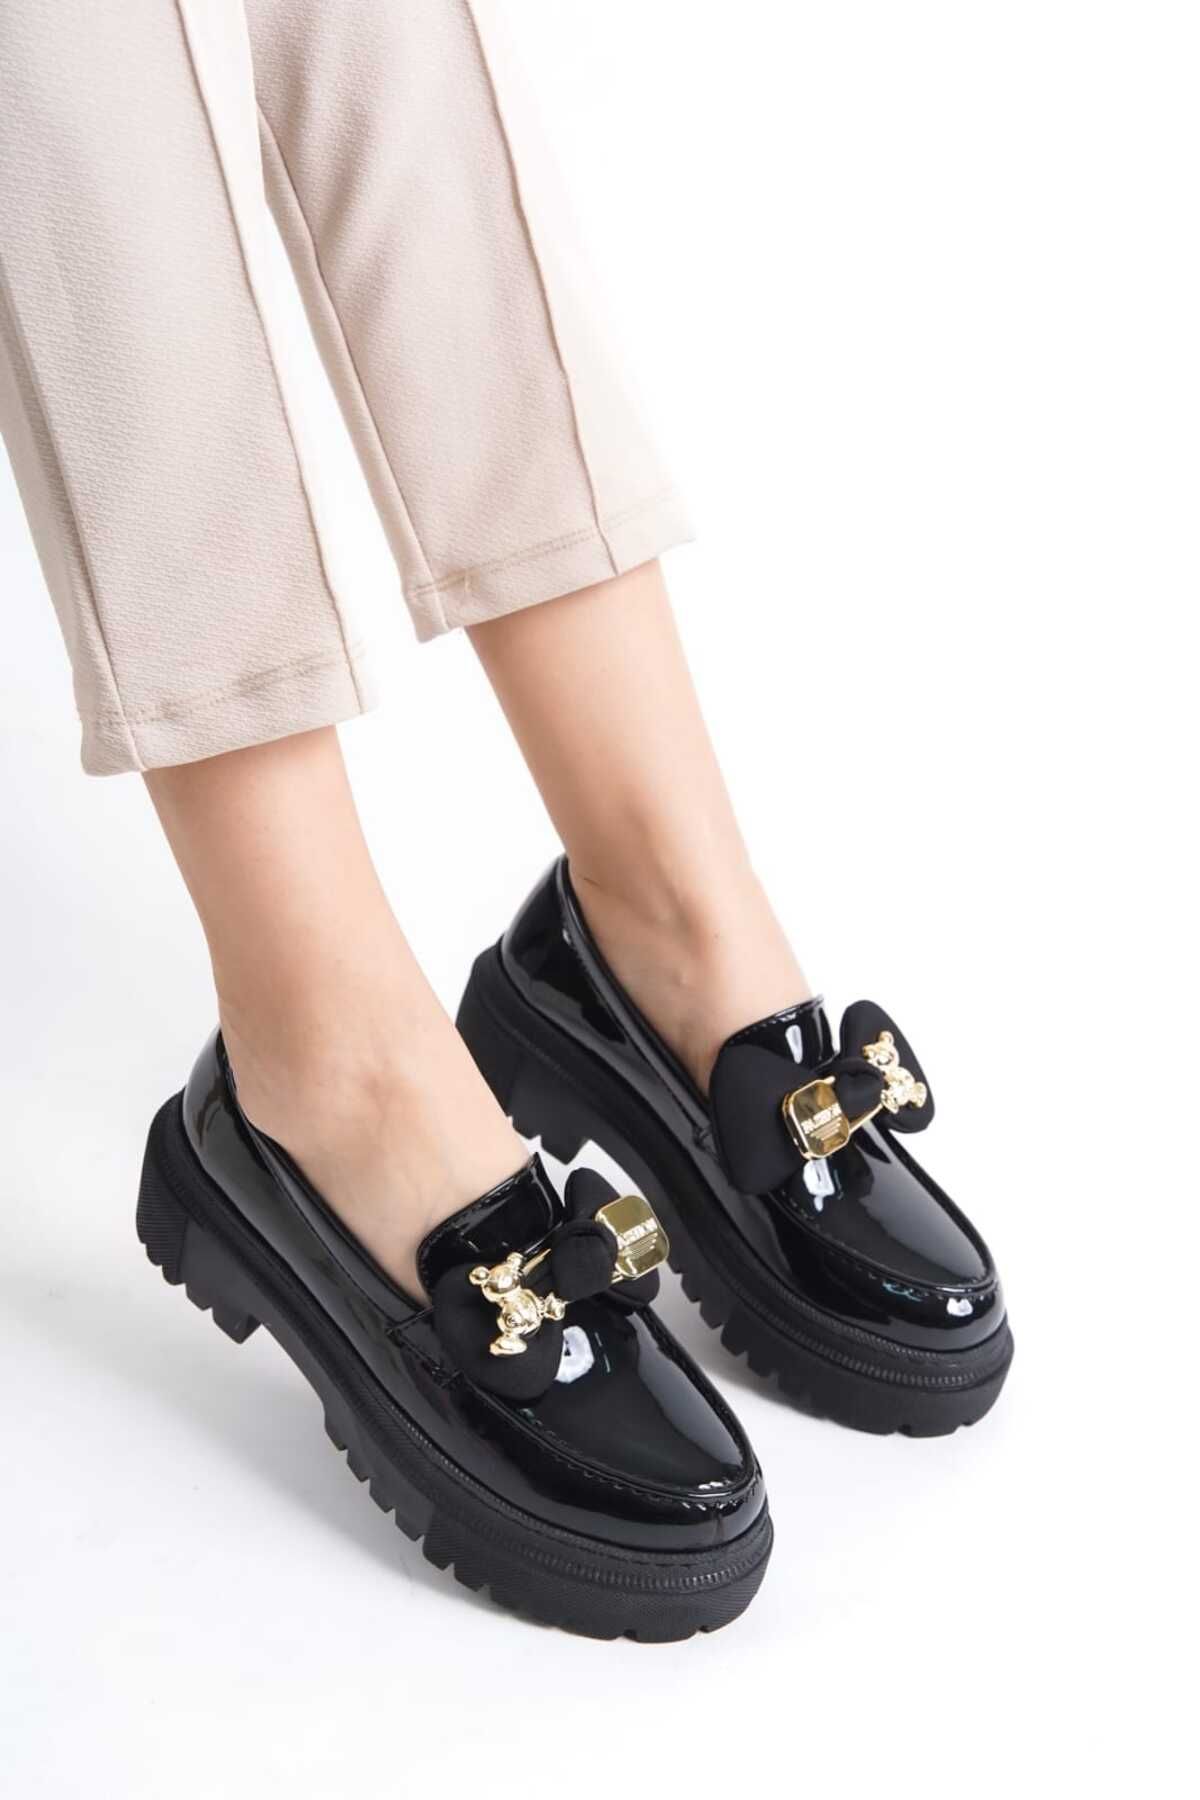 Bilalim Shoes 0078-ı Kadın Loafer Günlük Ayakkabı Şık Ve Rahat